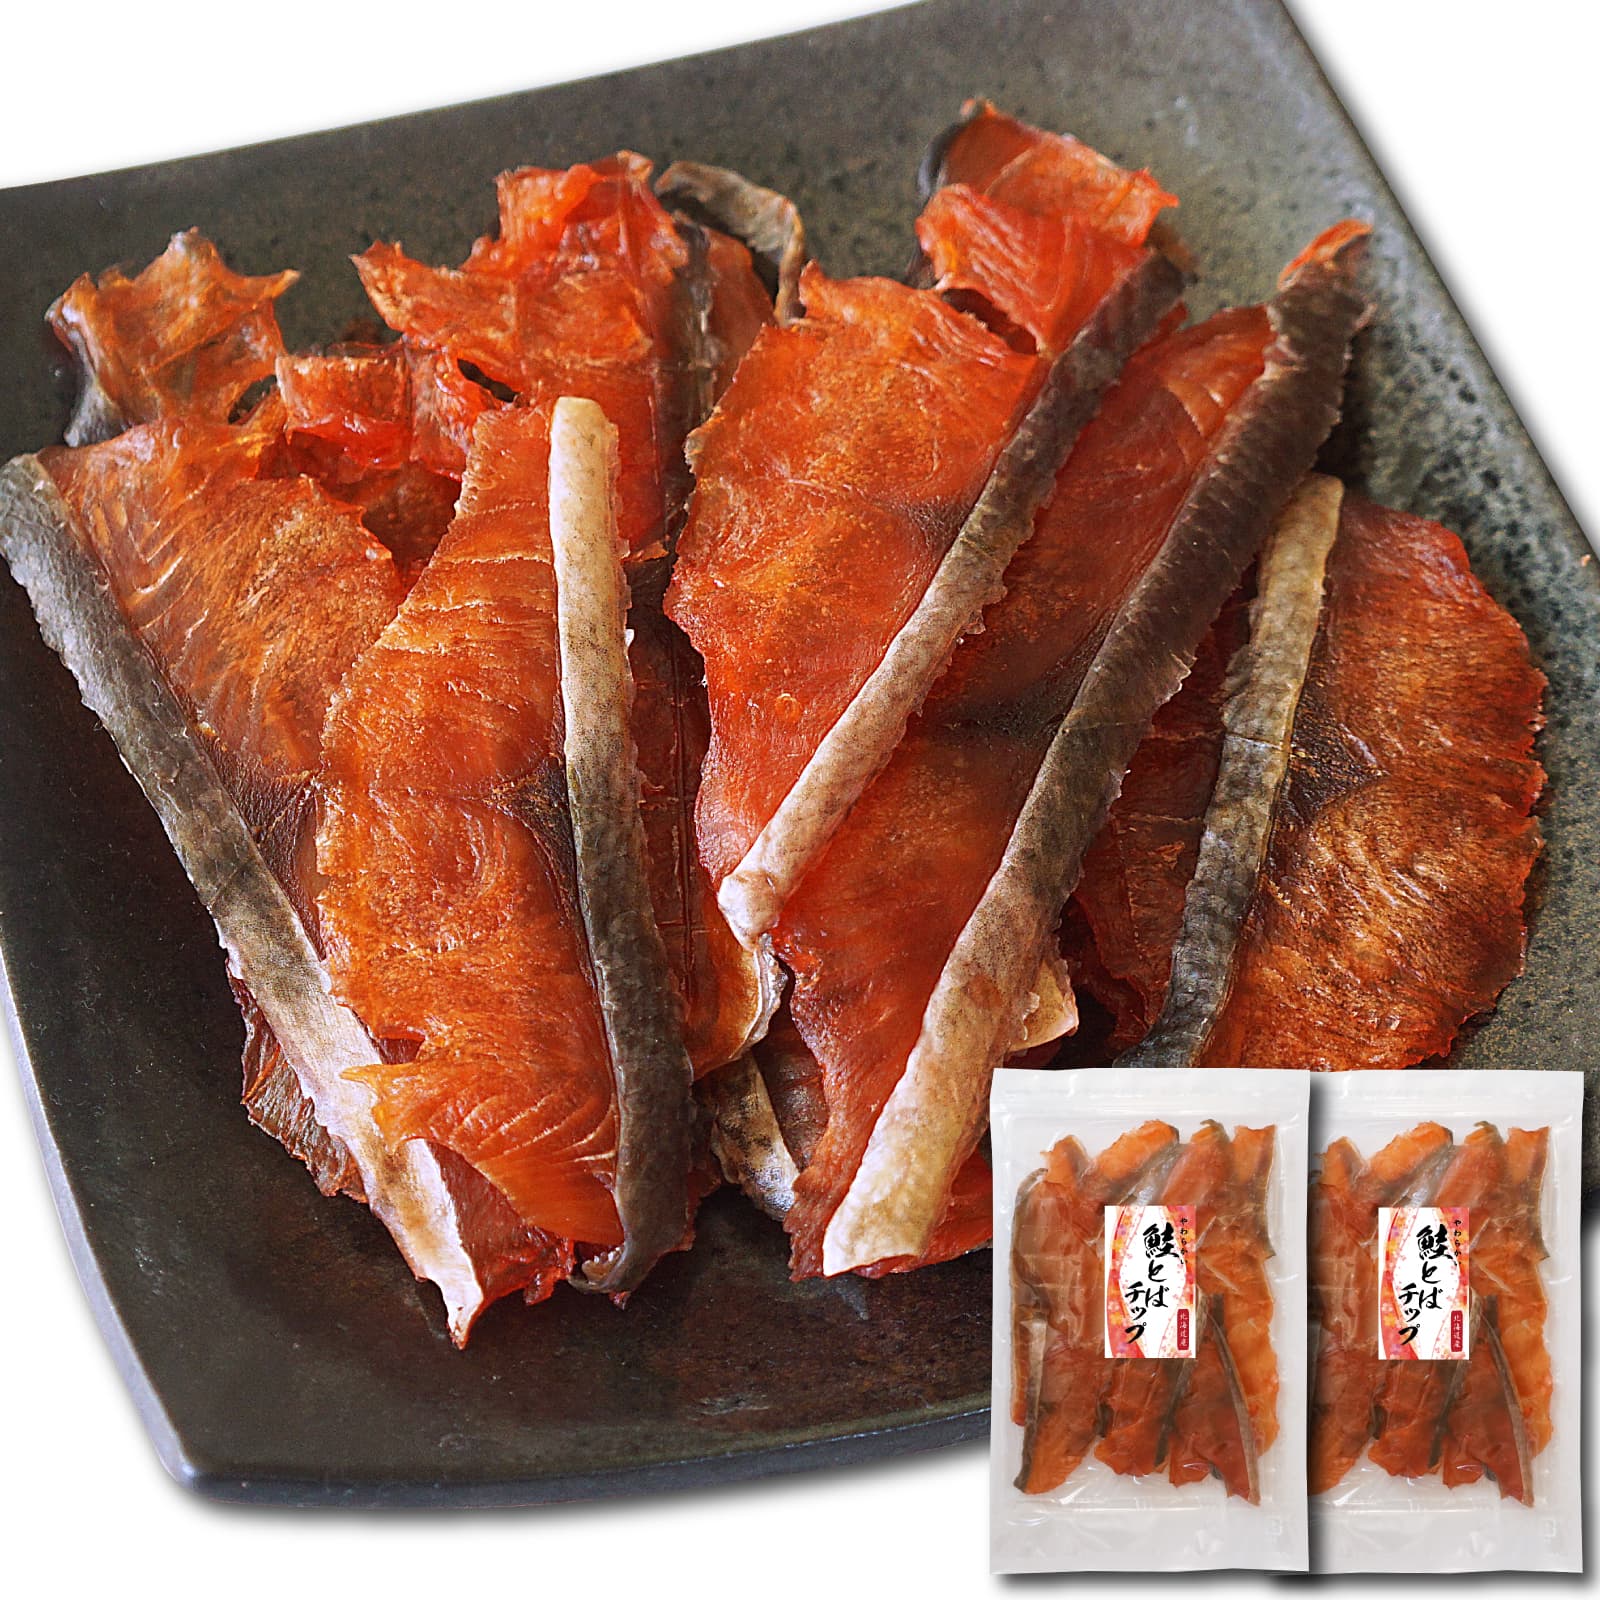 脂がのった鮭を切り身状に食べやすくスライス 鮭とば チップ 150g×2袋 鮭トバ 鮭の切り身 食べやすくスライス 業務用 送料無料新品 特売 骨もないソフトタイプ